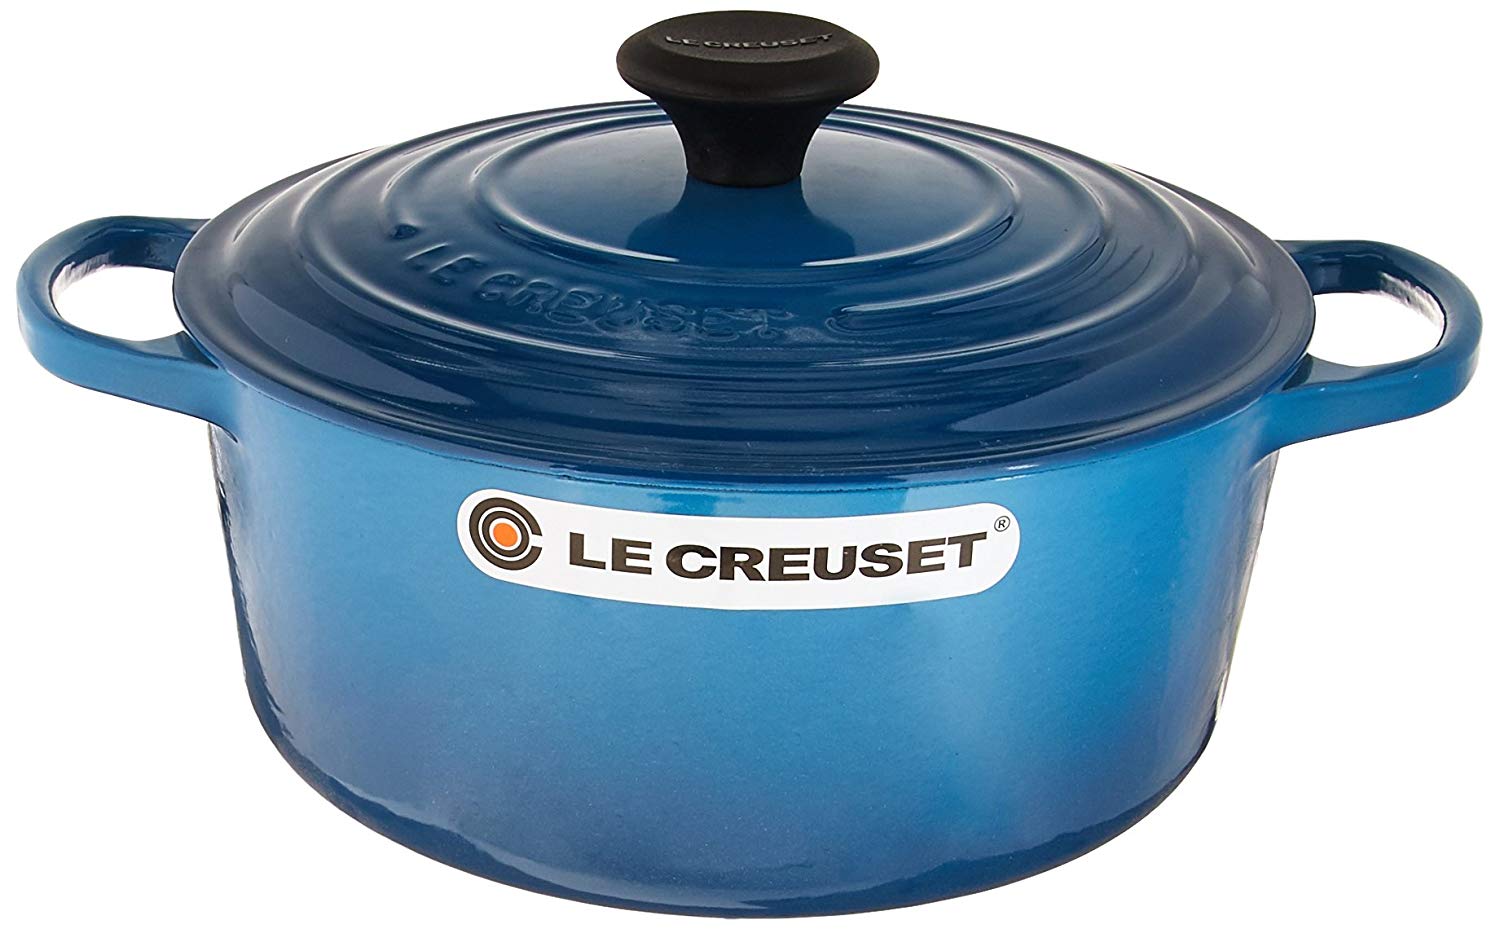 Le Creuset Signature 4.5-Quart Cast Iron Round Dutch Oven - White